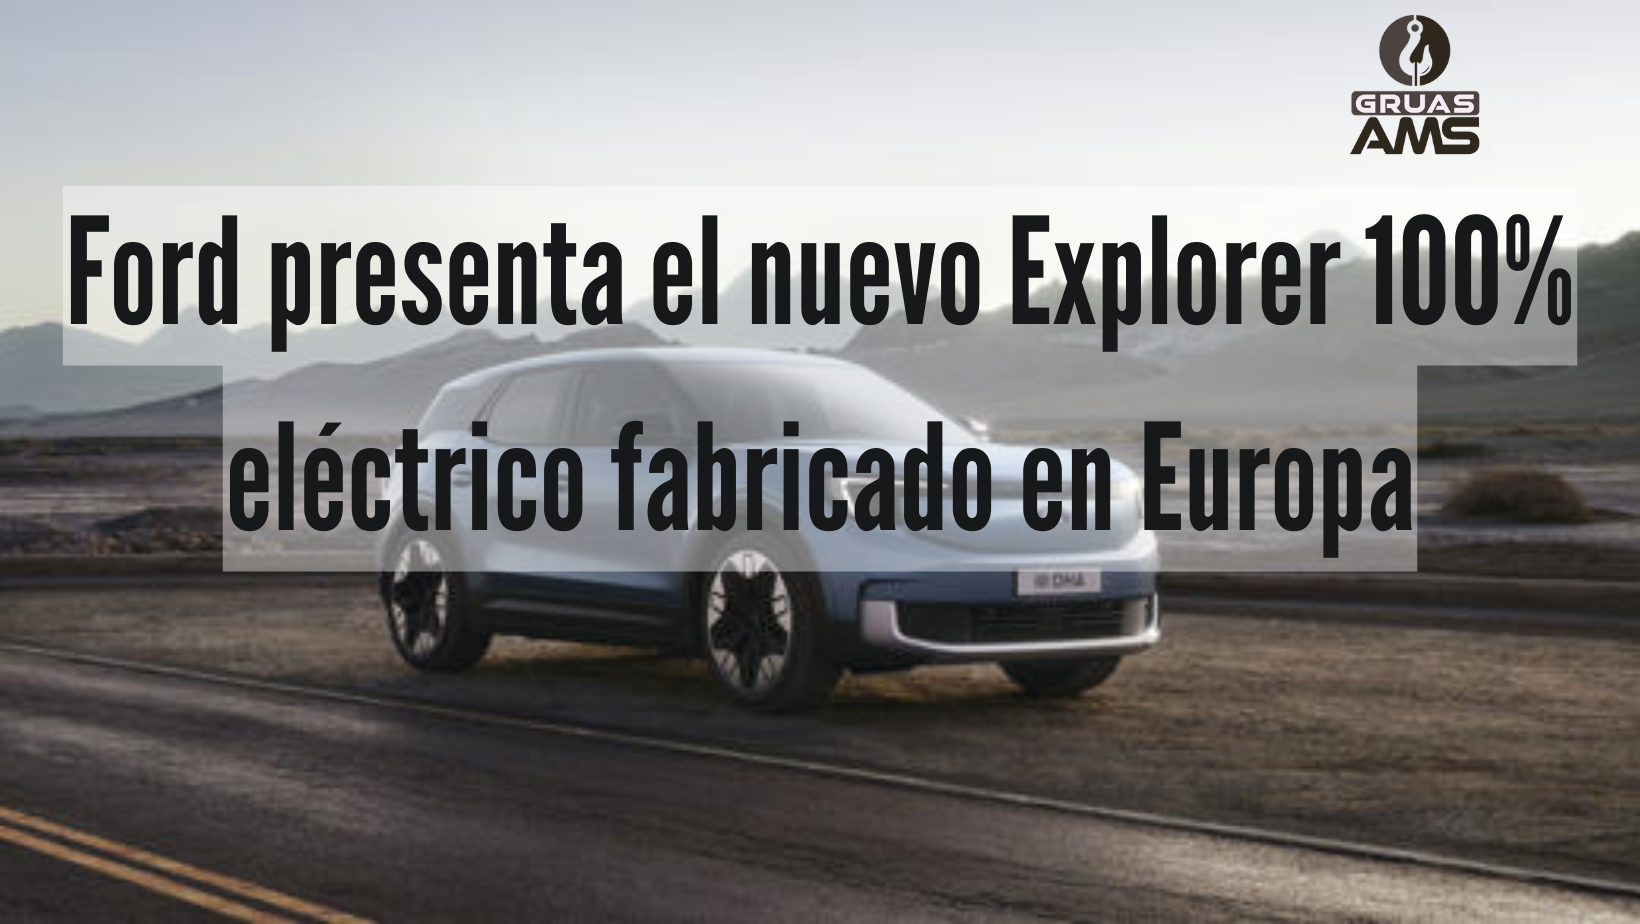 Ford presenta el nuevo Explorer 100% eléctrico fabricado en Europa